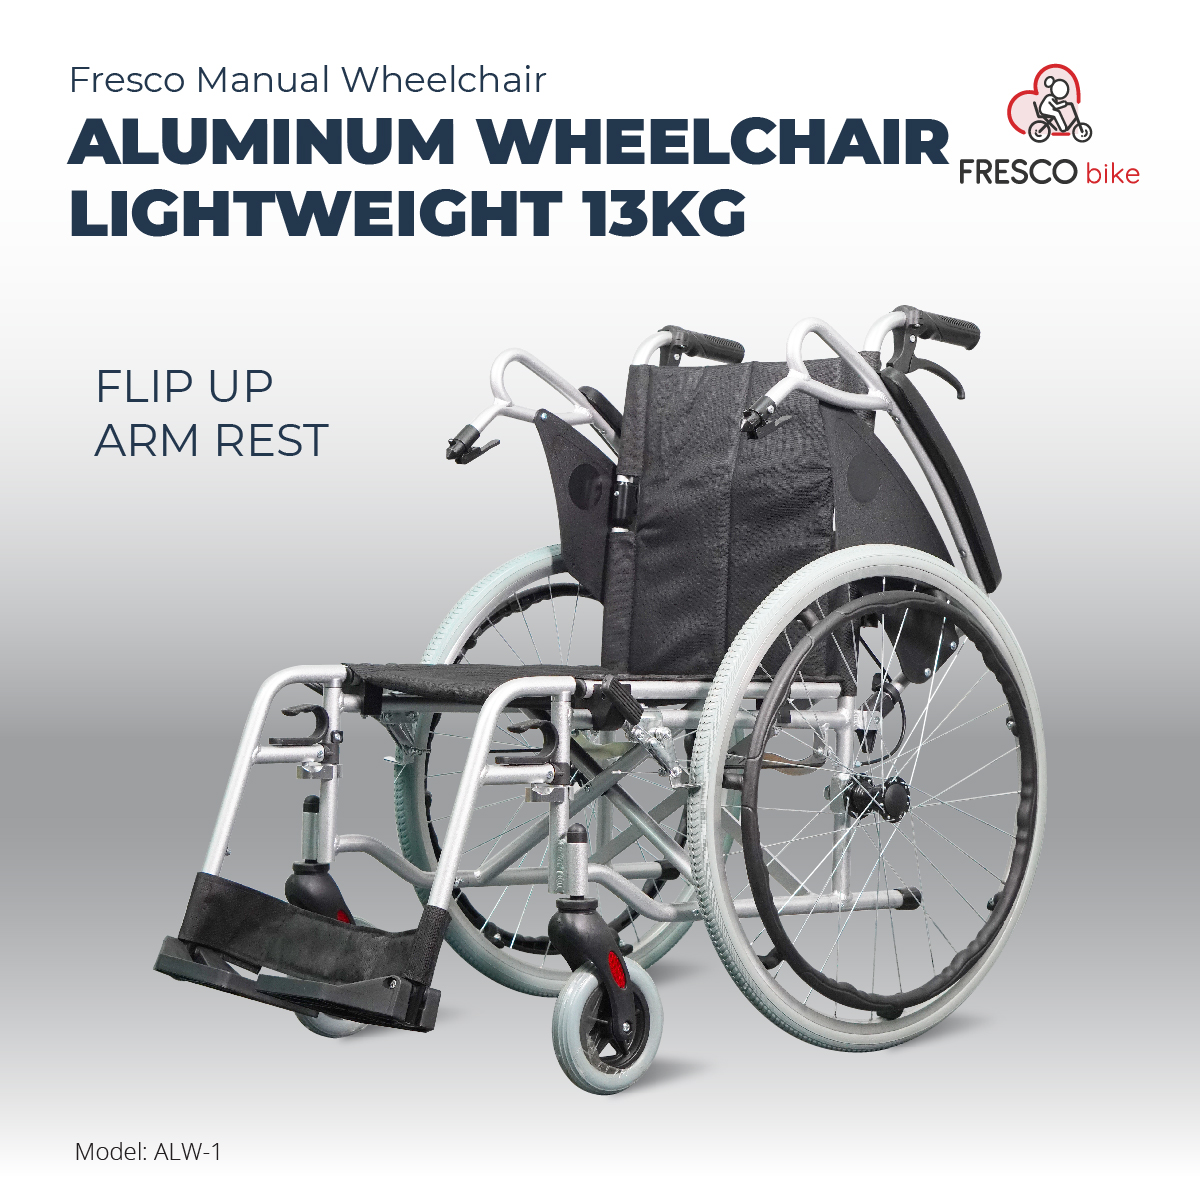 Aluminum Wheelchair Lightweight 13kg Aluminium Alloy Wheelchair